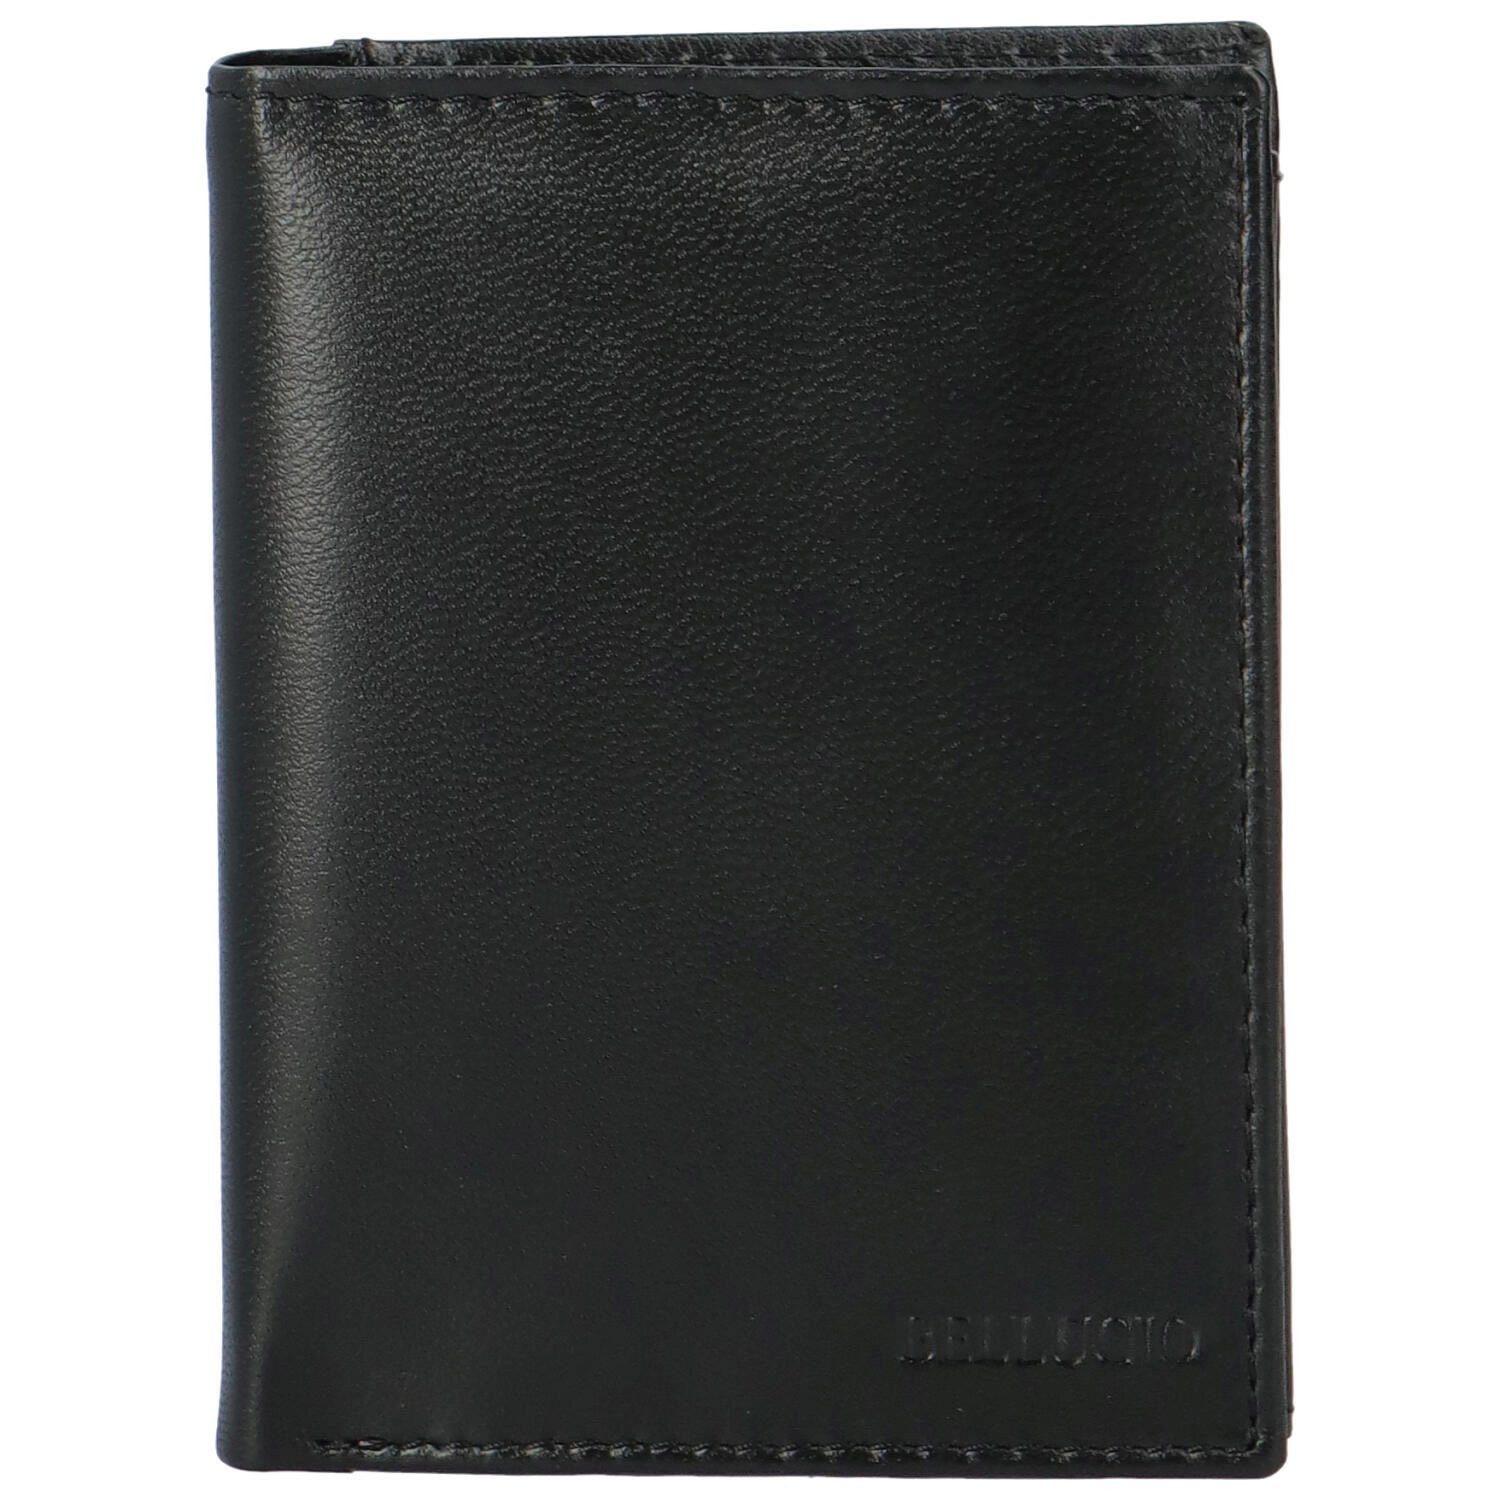 Pánská kožená peněženka černá - Bellugio Lotar černá